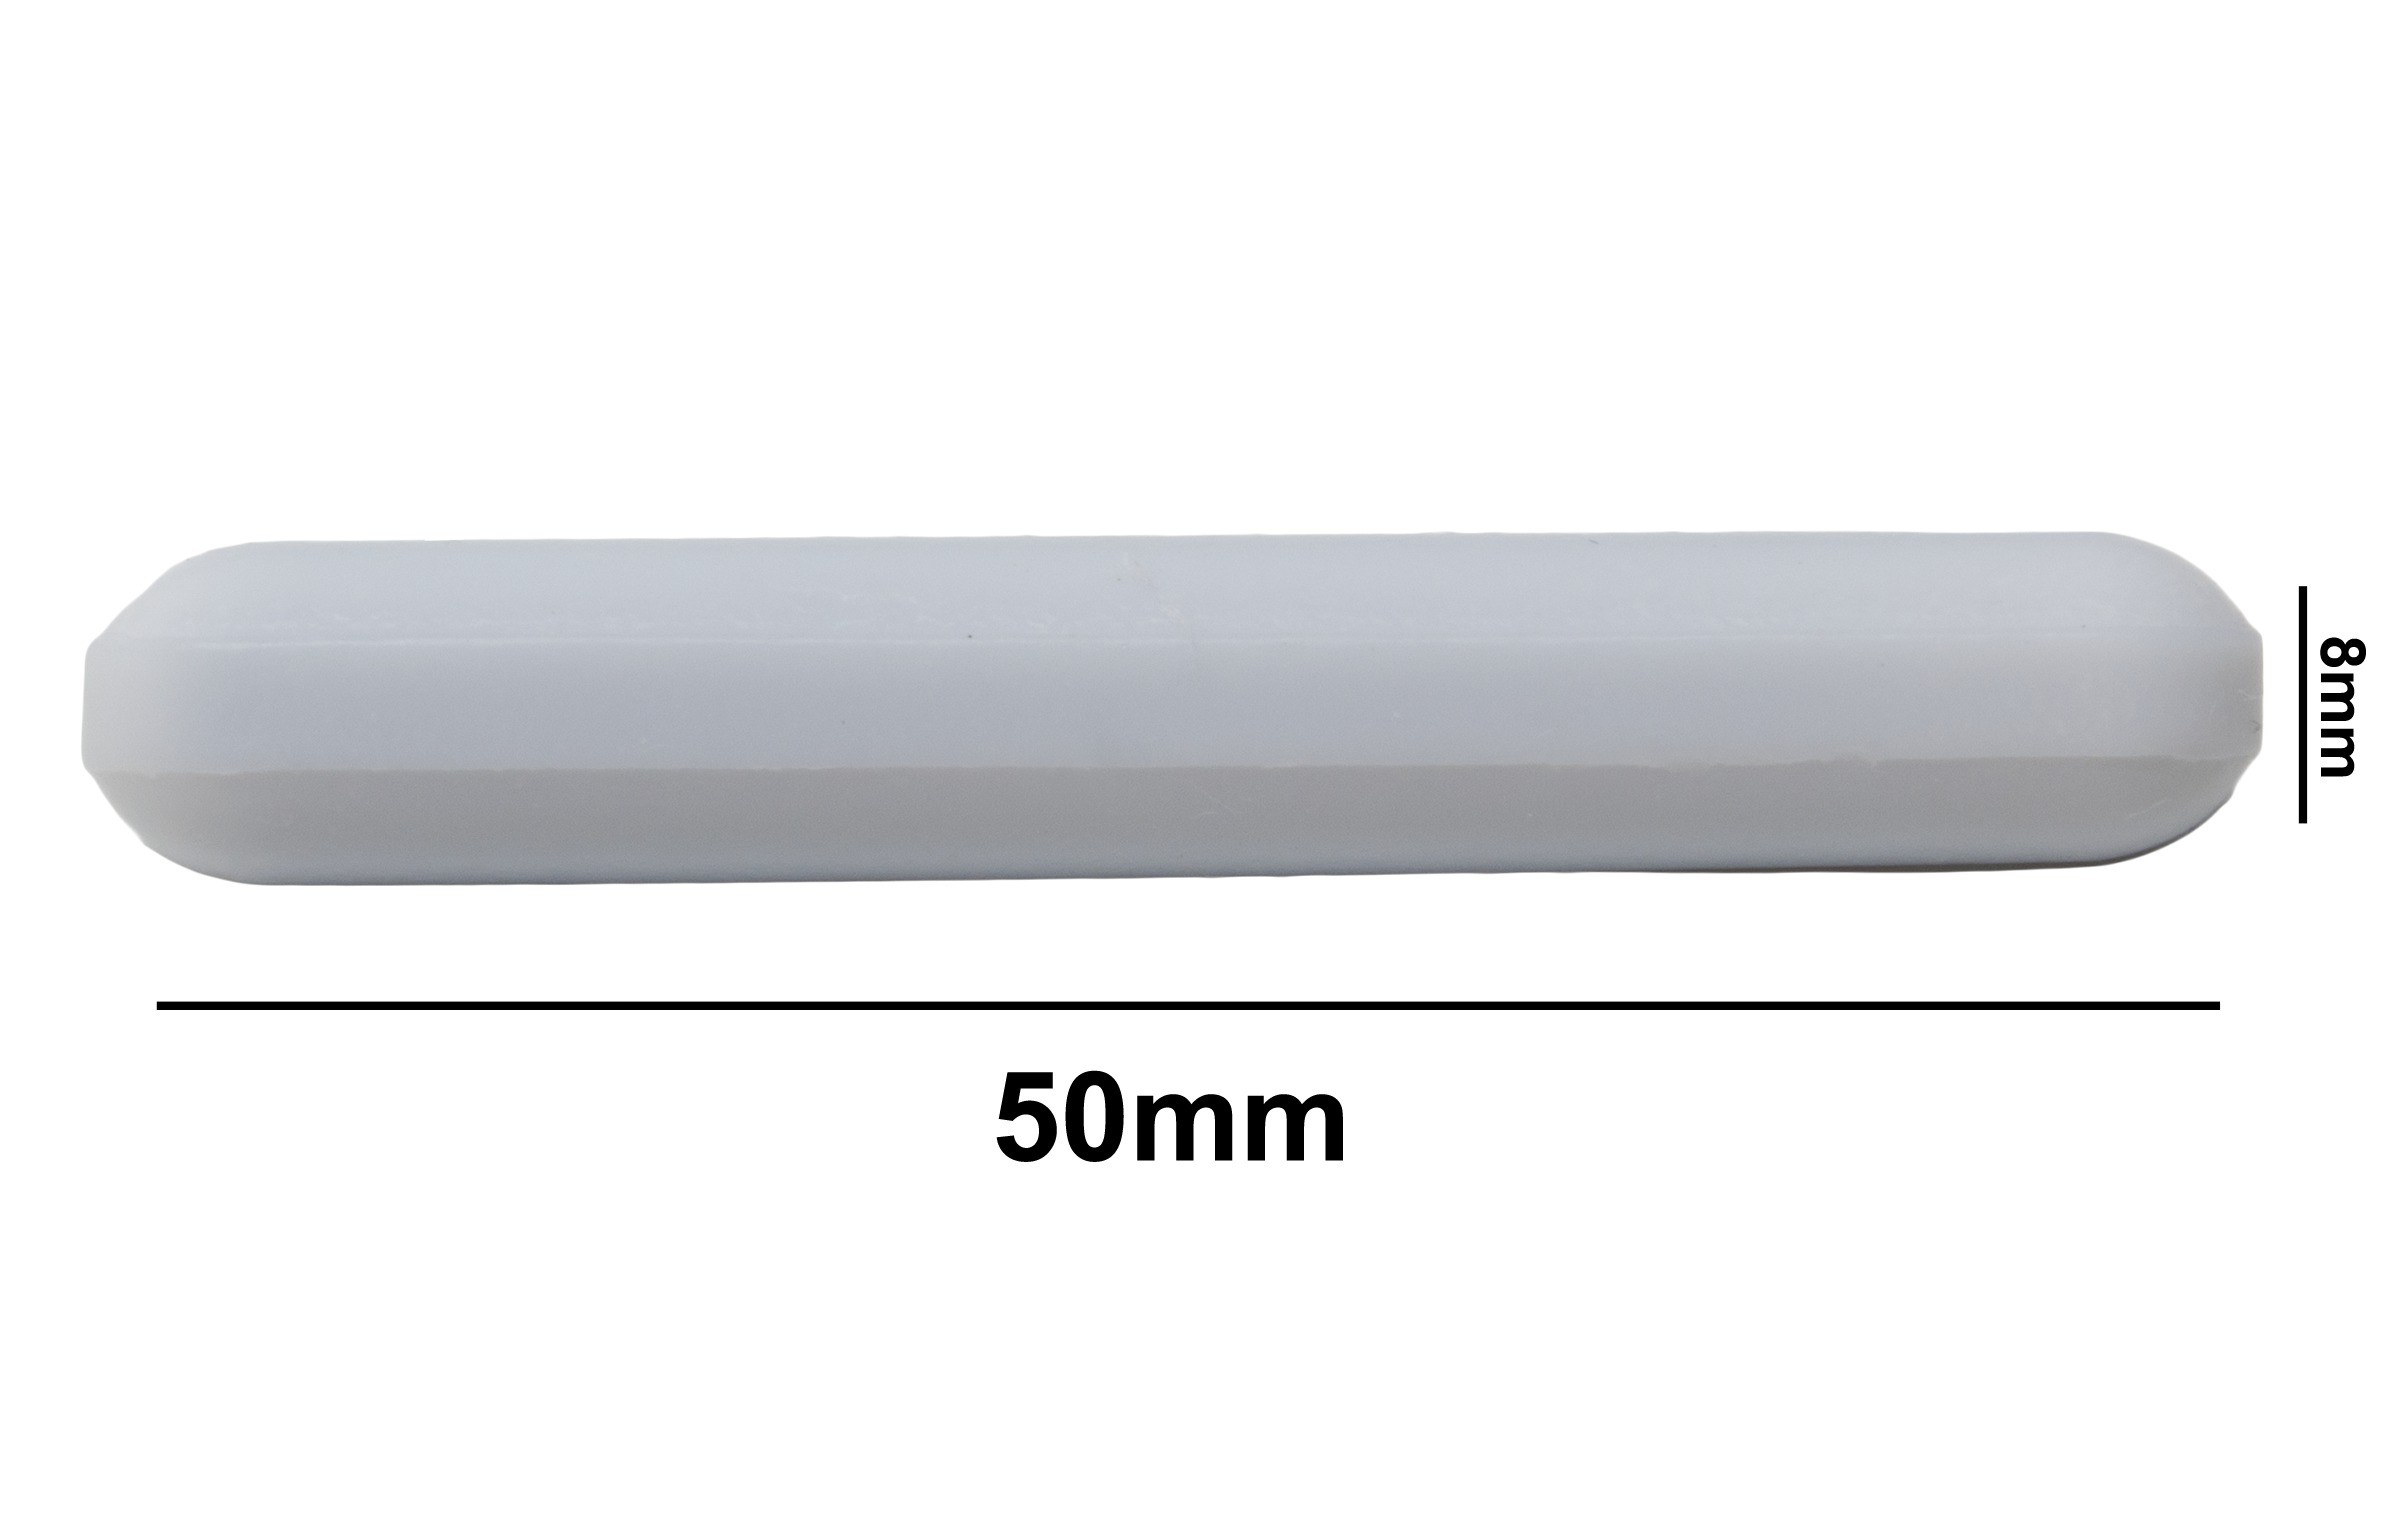 SP Bel-Art Spinbar Teflon Polygon Magnetic Stirring Bar; 50 x 8mm, White, without Pivot Ring